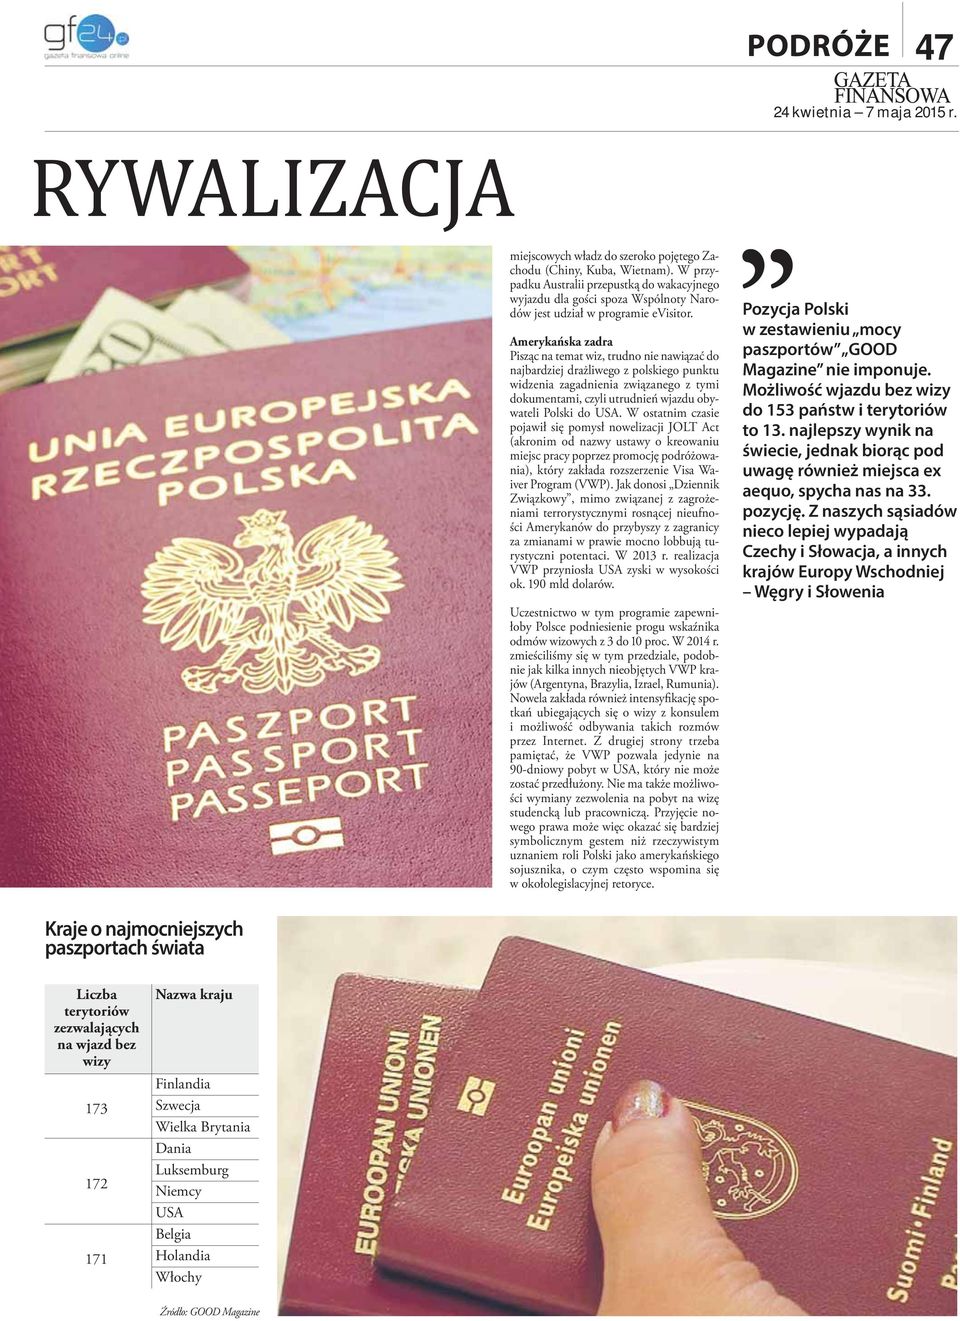 Amerykańska zadra Pisząc na temat wiz, trudno nie nawiązać do najbardziej drażliwego z polskiego punktu widzenia zagadnienia związanego z tymi dokumentami, czyli utrudnień wjazdu obywateli Polski do